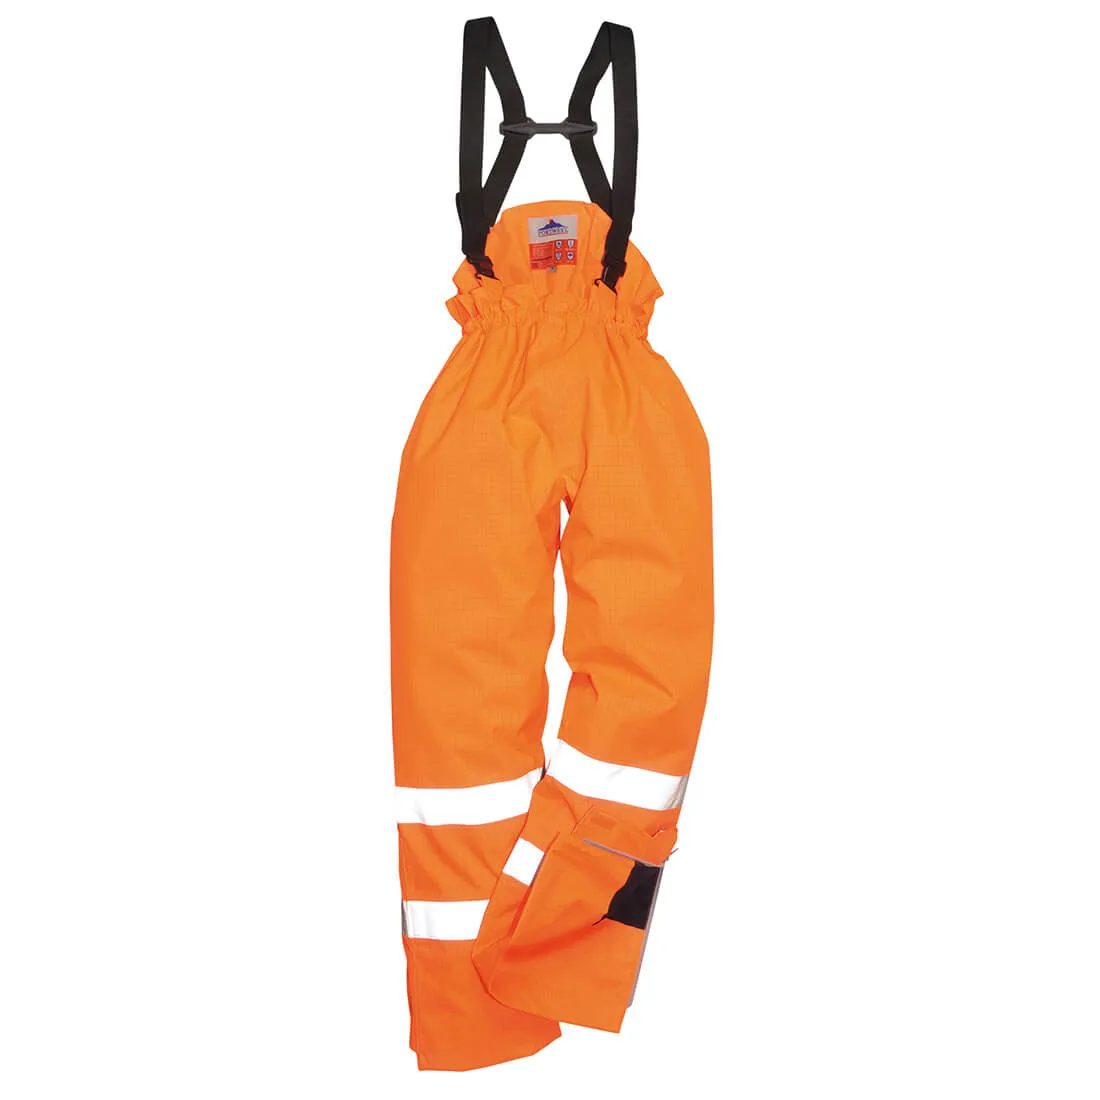 Biz Flame Hi Vis Flame Resistant Rain Unlined Trousers - Orange, XL